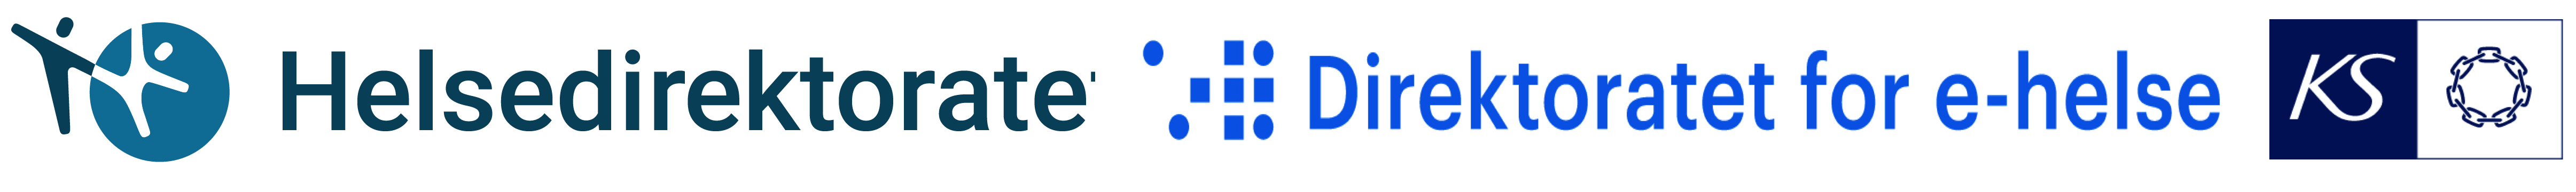 logo hdir dp.png